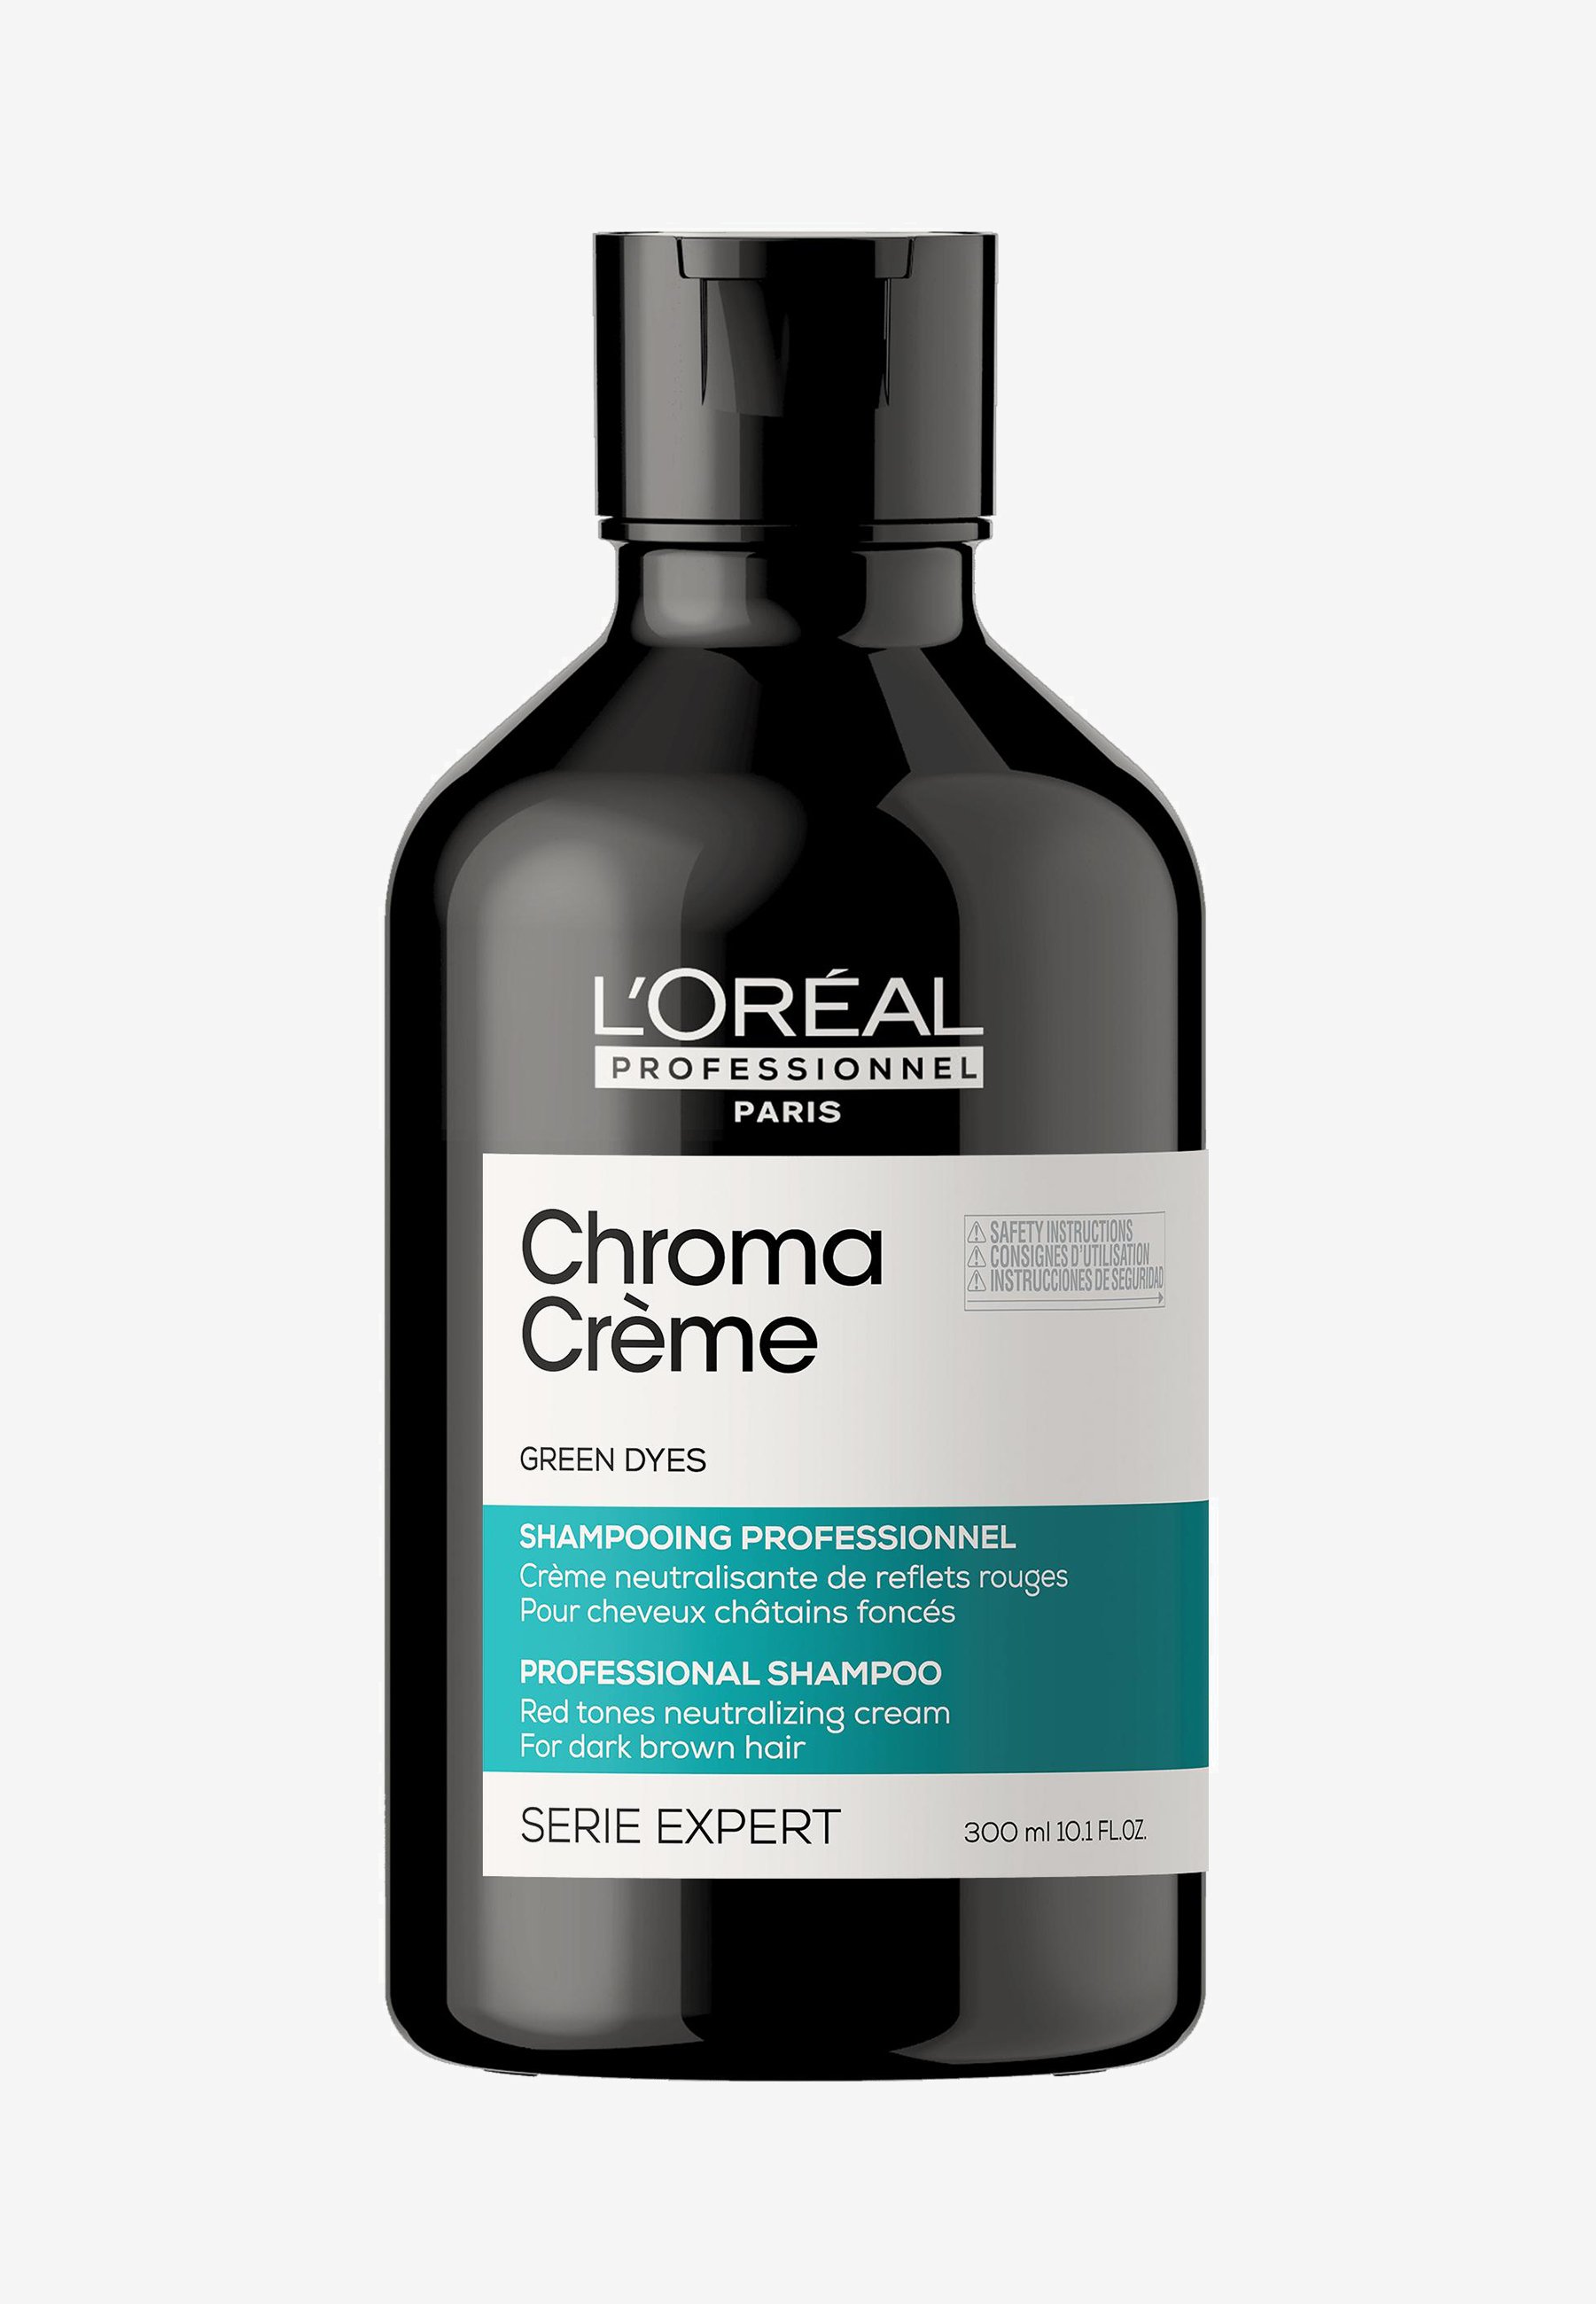 volume expand loréal professionnel szampon 250 ml kup